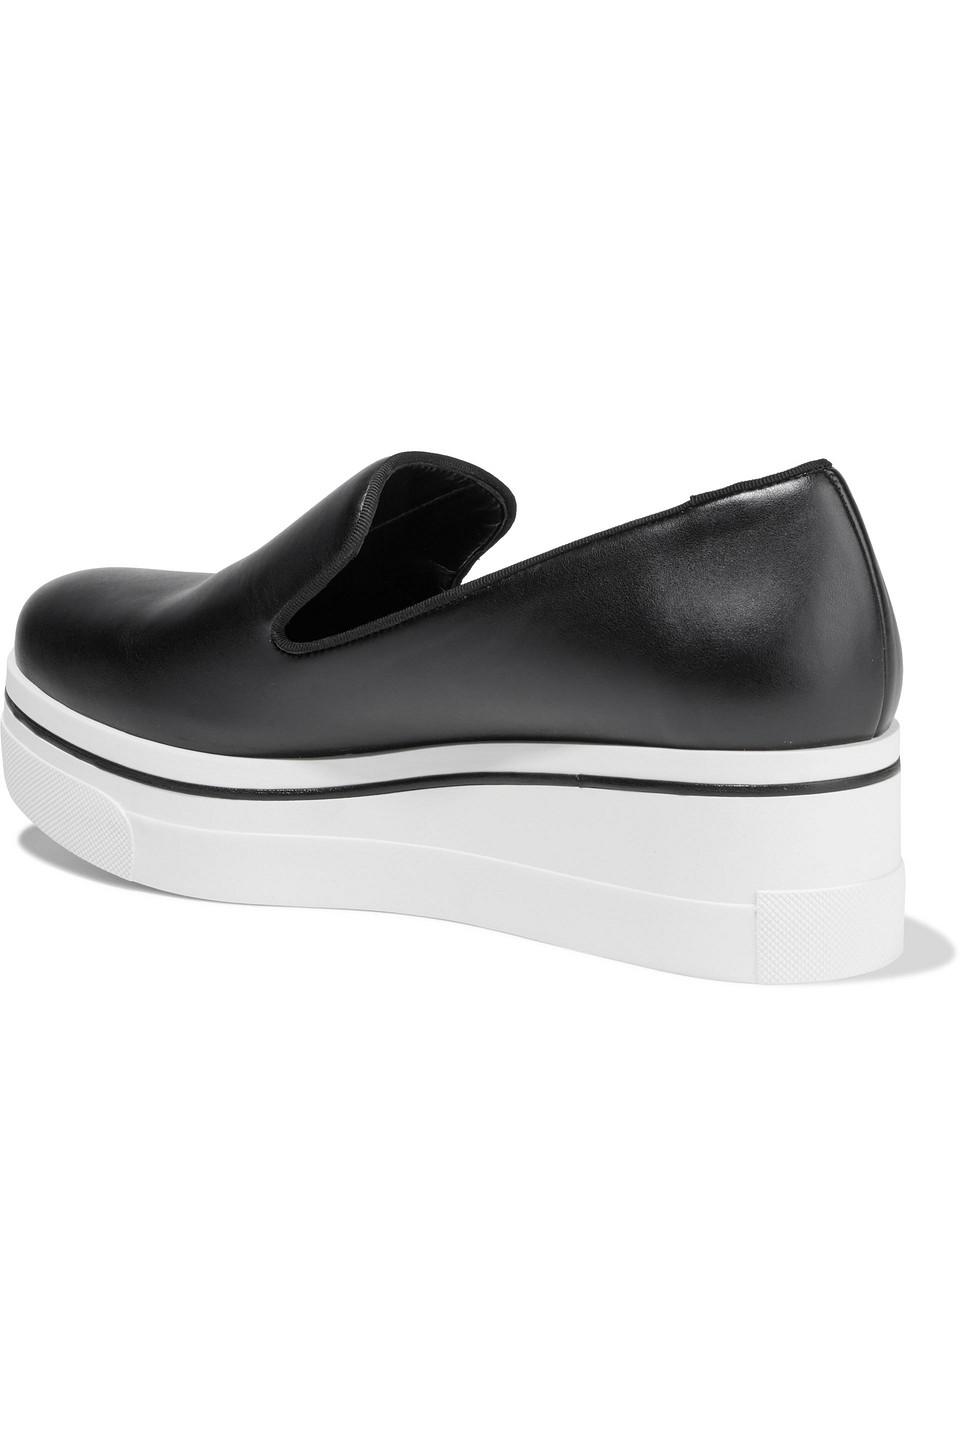 Stella McCartney Binx Faux Leather Platform Slip-on Sneakers in Black | Lyst